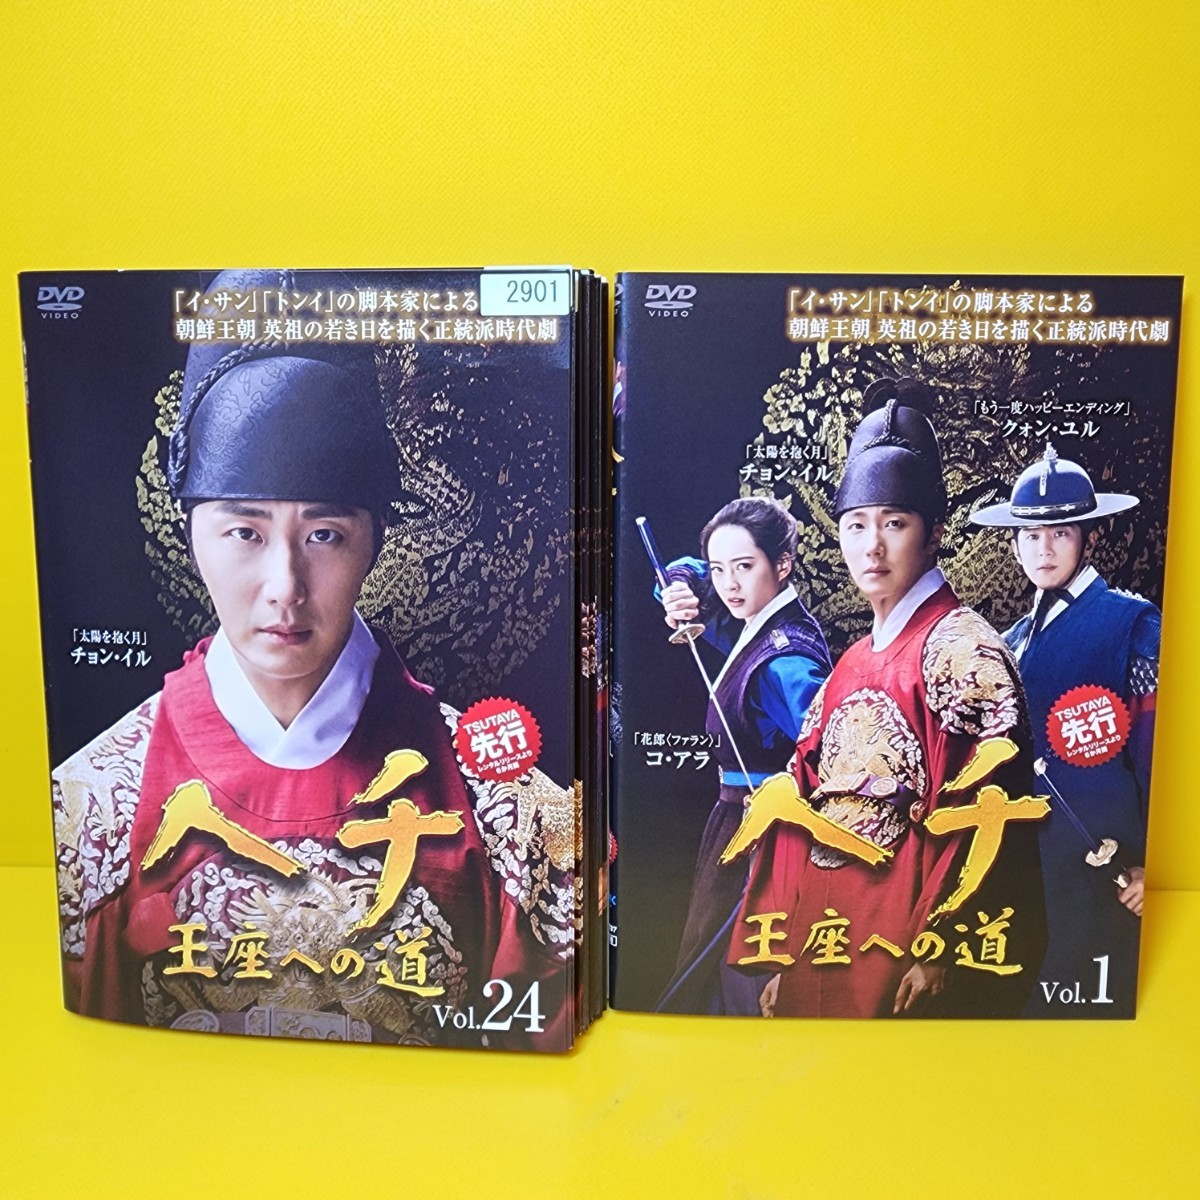 ヘチ 王座への道 DVD 全24巻 全巻セット